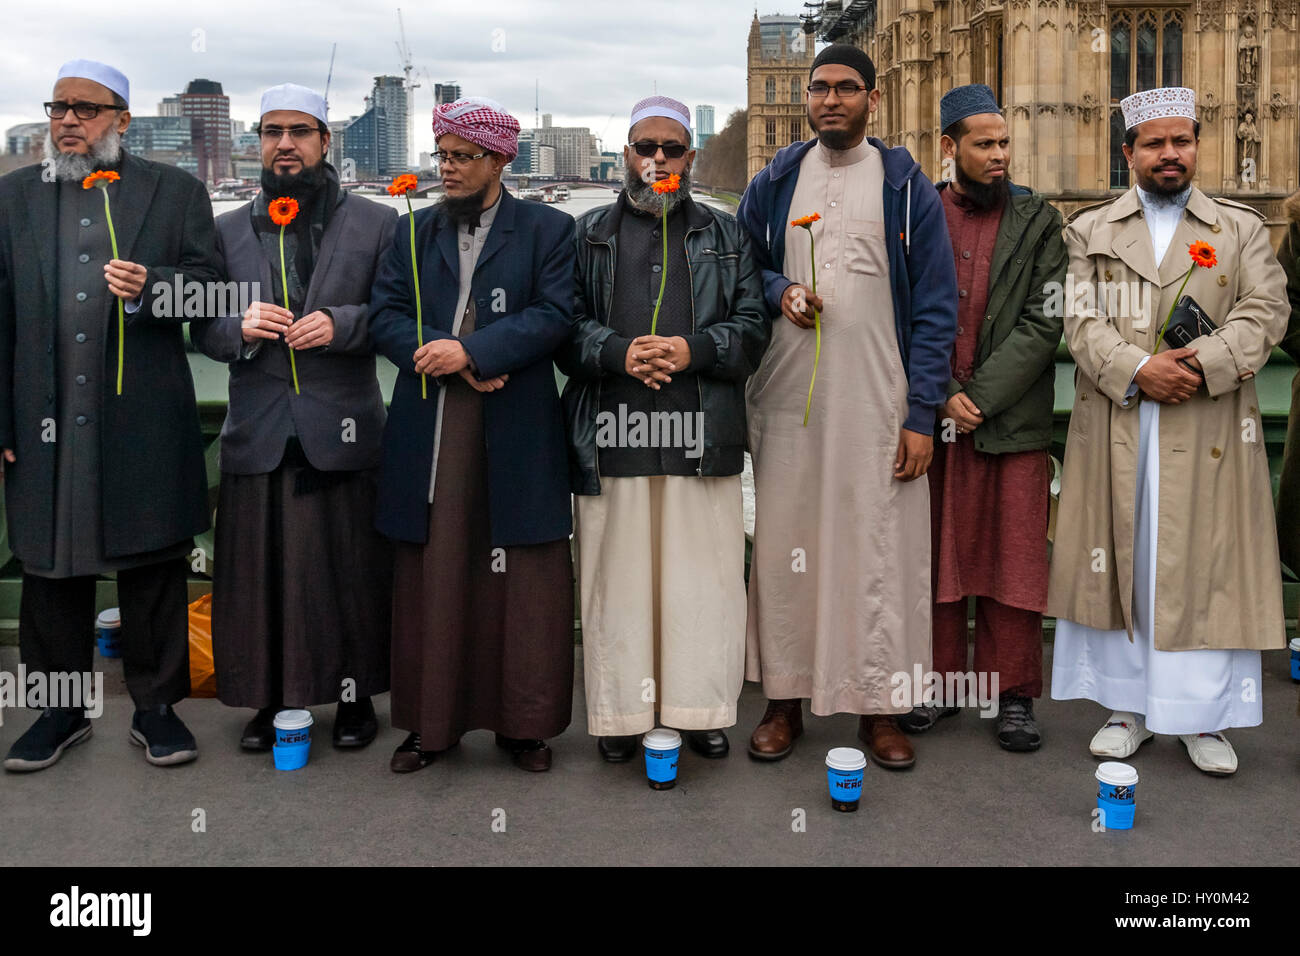 Une semaine après l'attaque terroriste de Londres, les membres de la communauté musulmane de Londres se rassembleront sur le pont de Westminster pour se souvenir des victimes, Londres, Angleterre Banque D'Images